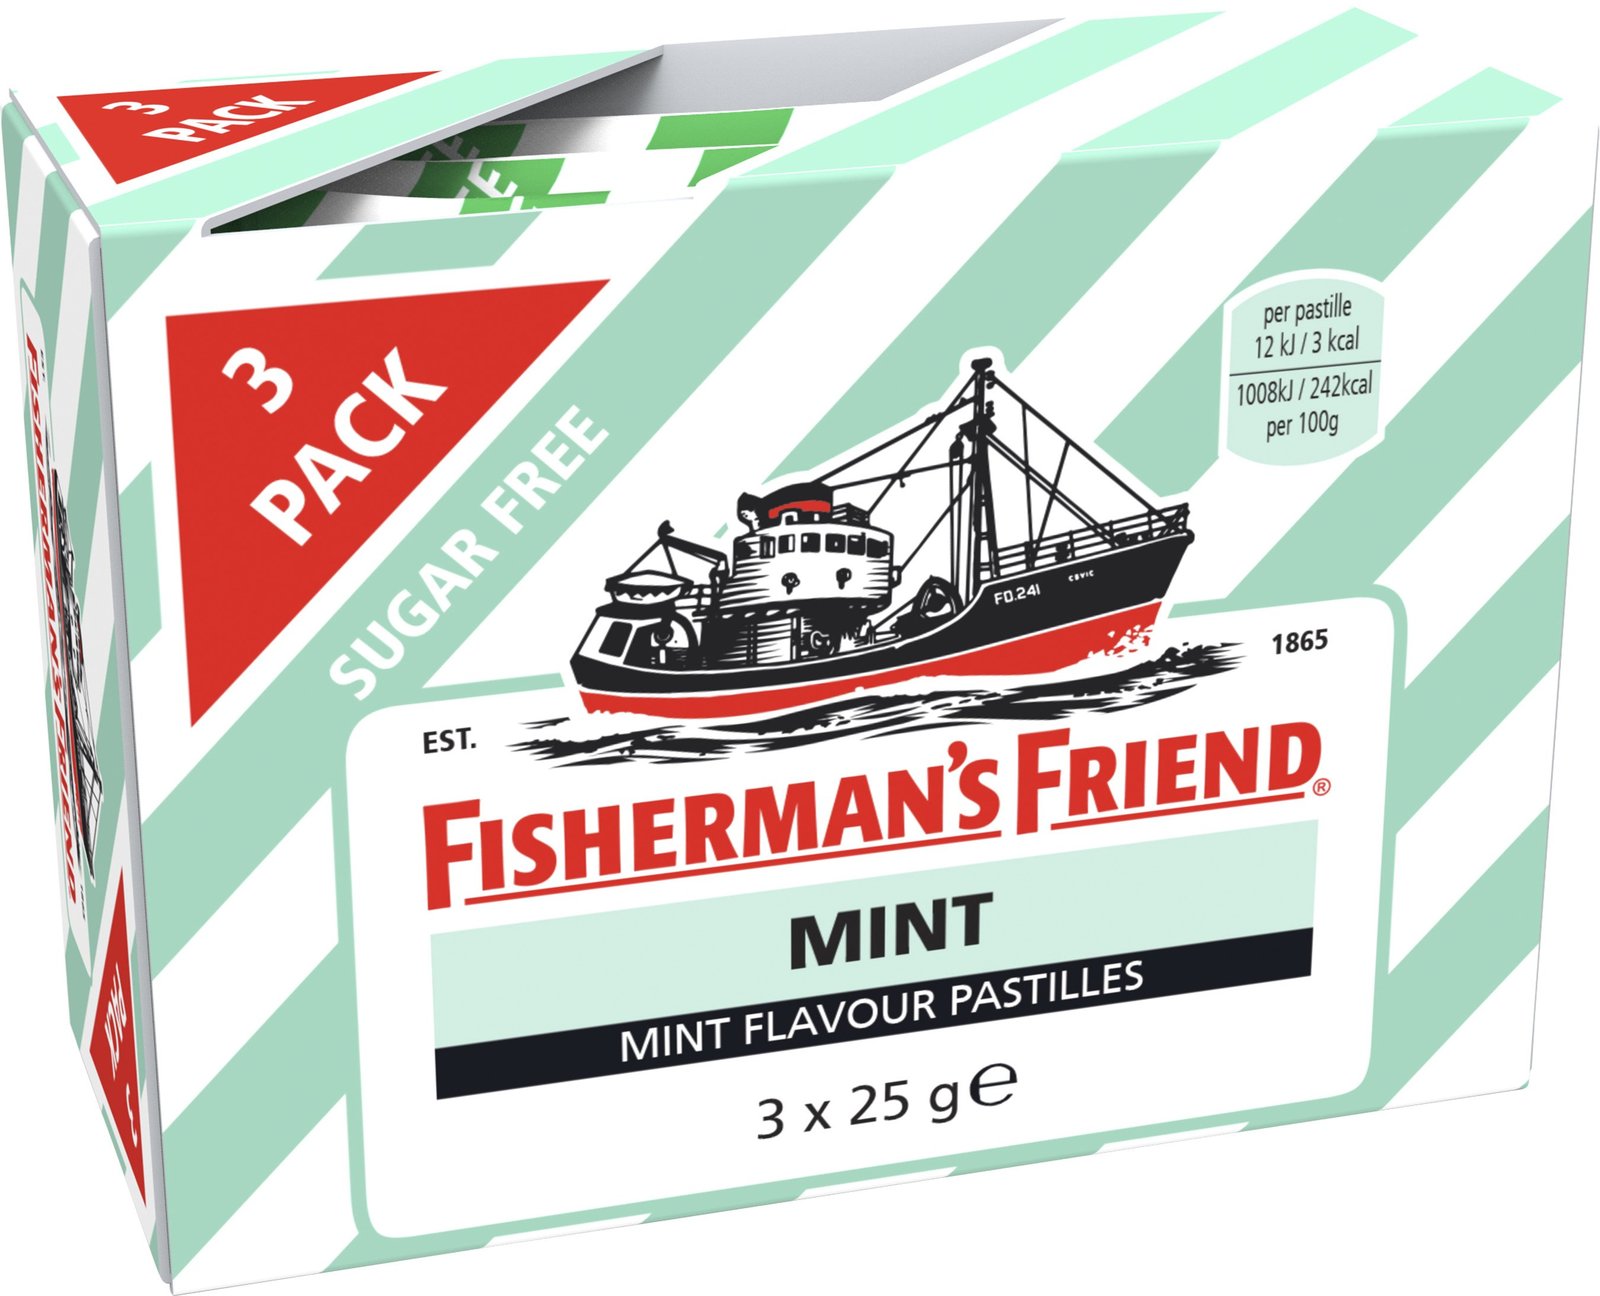 Fisherman's Friend Mint 3 x 25 g